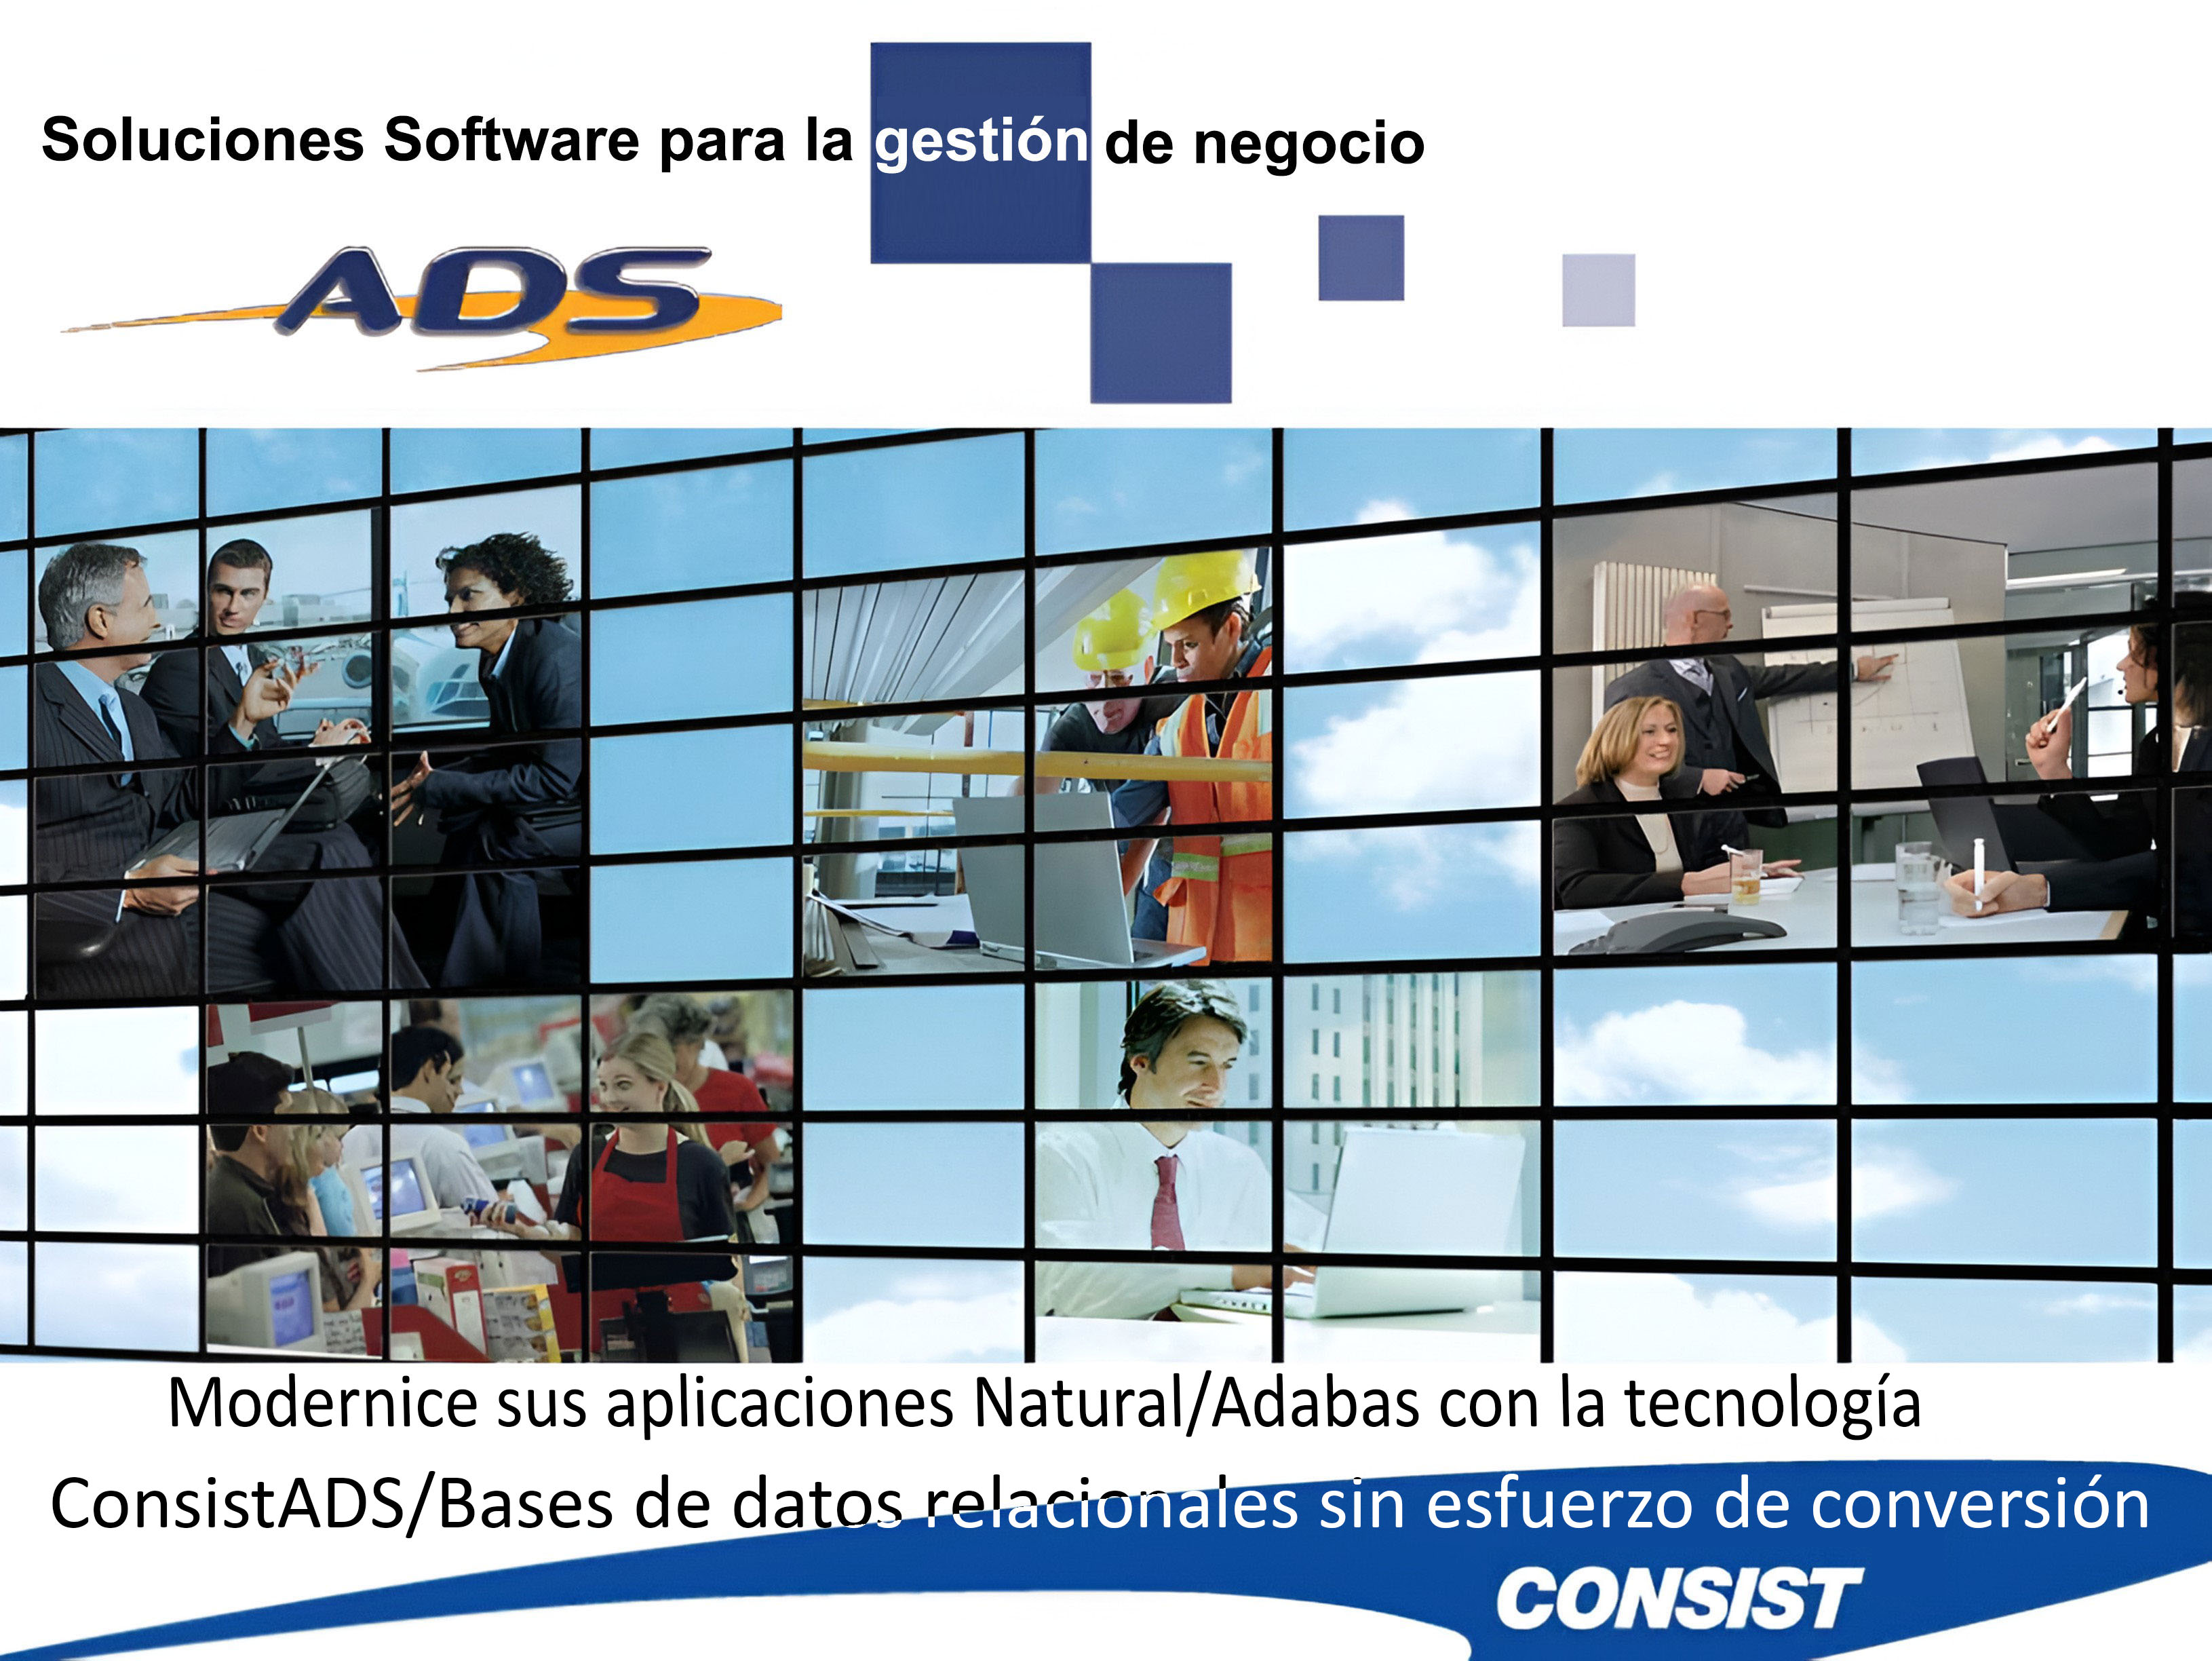 Modernice sus aplicaciones Natural/Adabas con la tecnología ConsistADS/Bases de datos relacionales sin esfuerzo de conversión